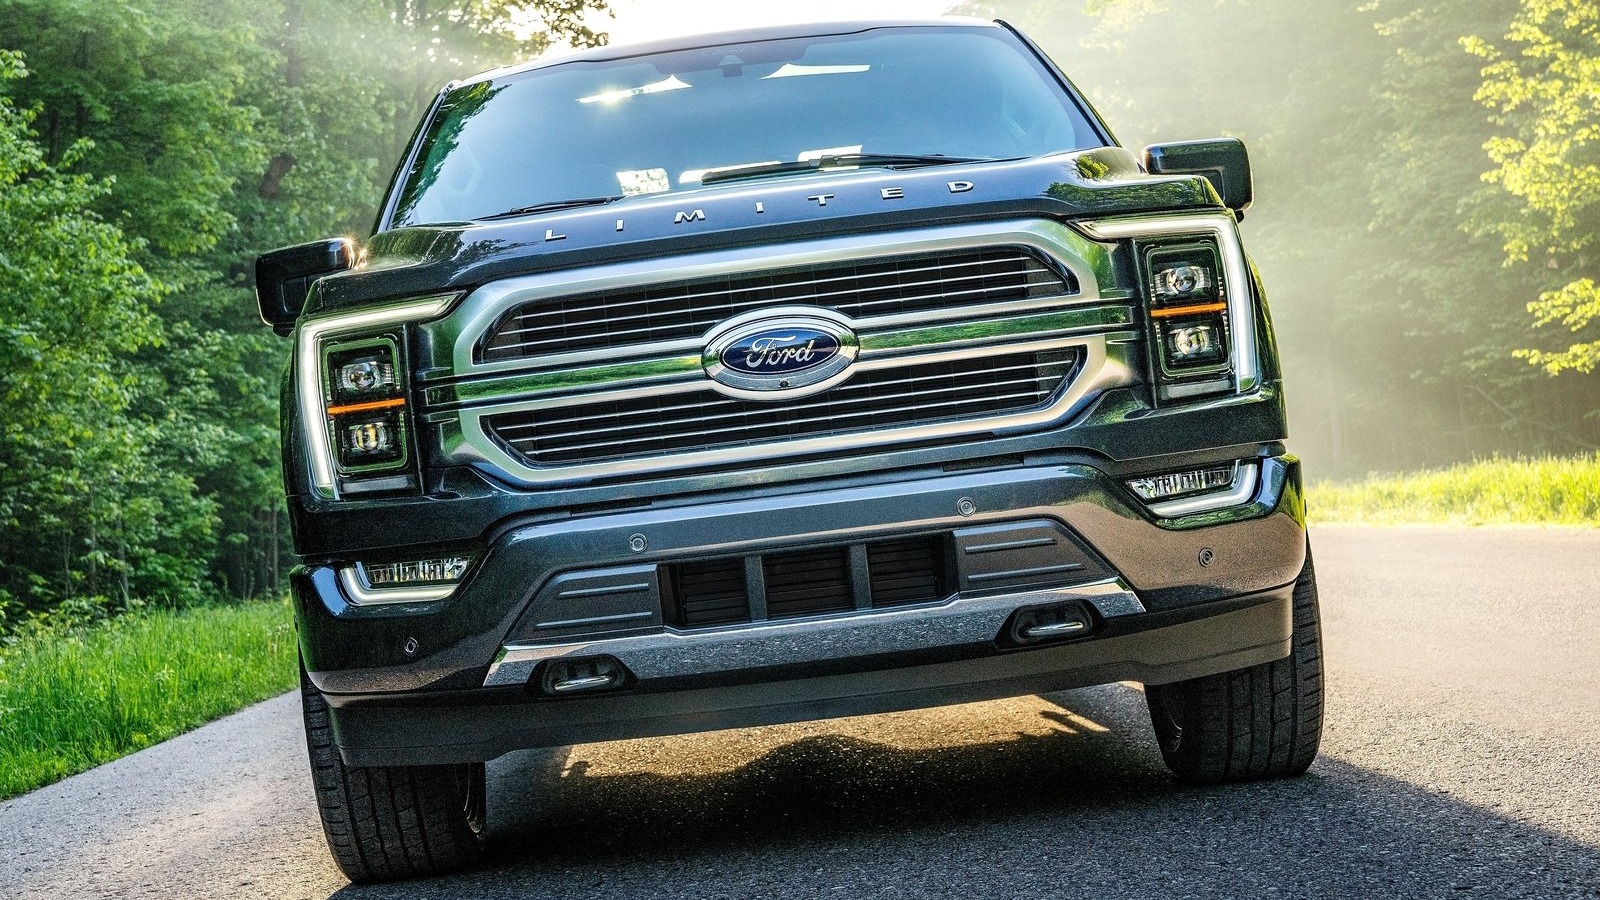 Ford gikk tom for sin egen logo – måtte utsette levering av nye biler